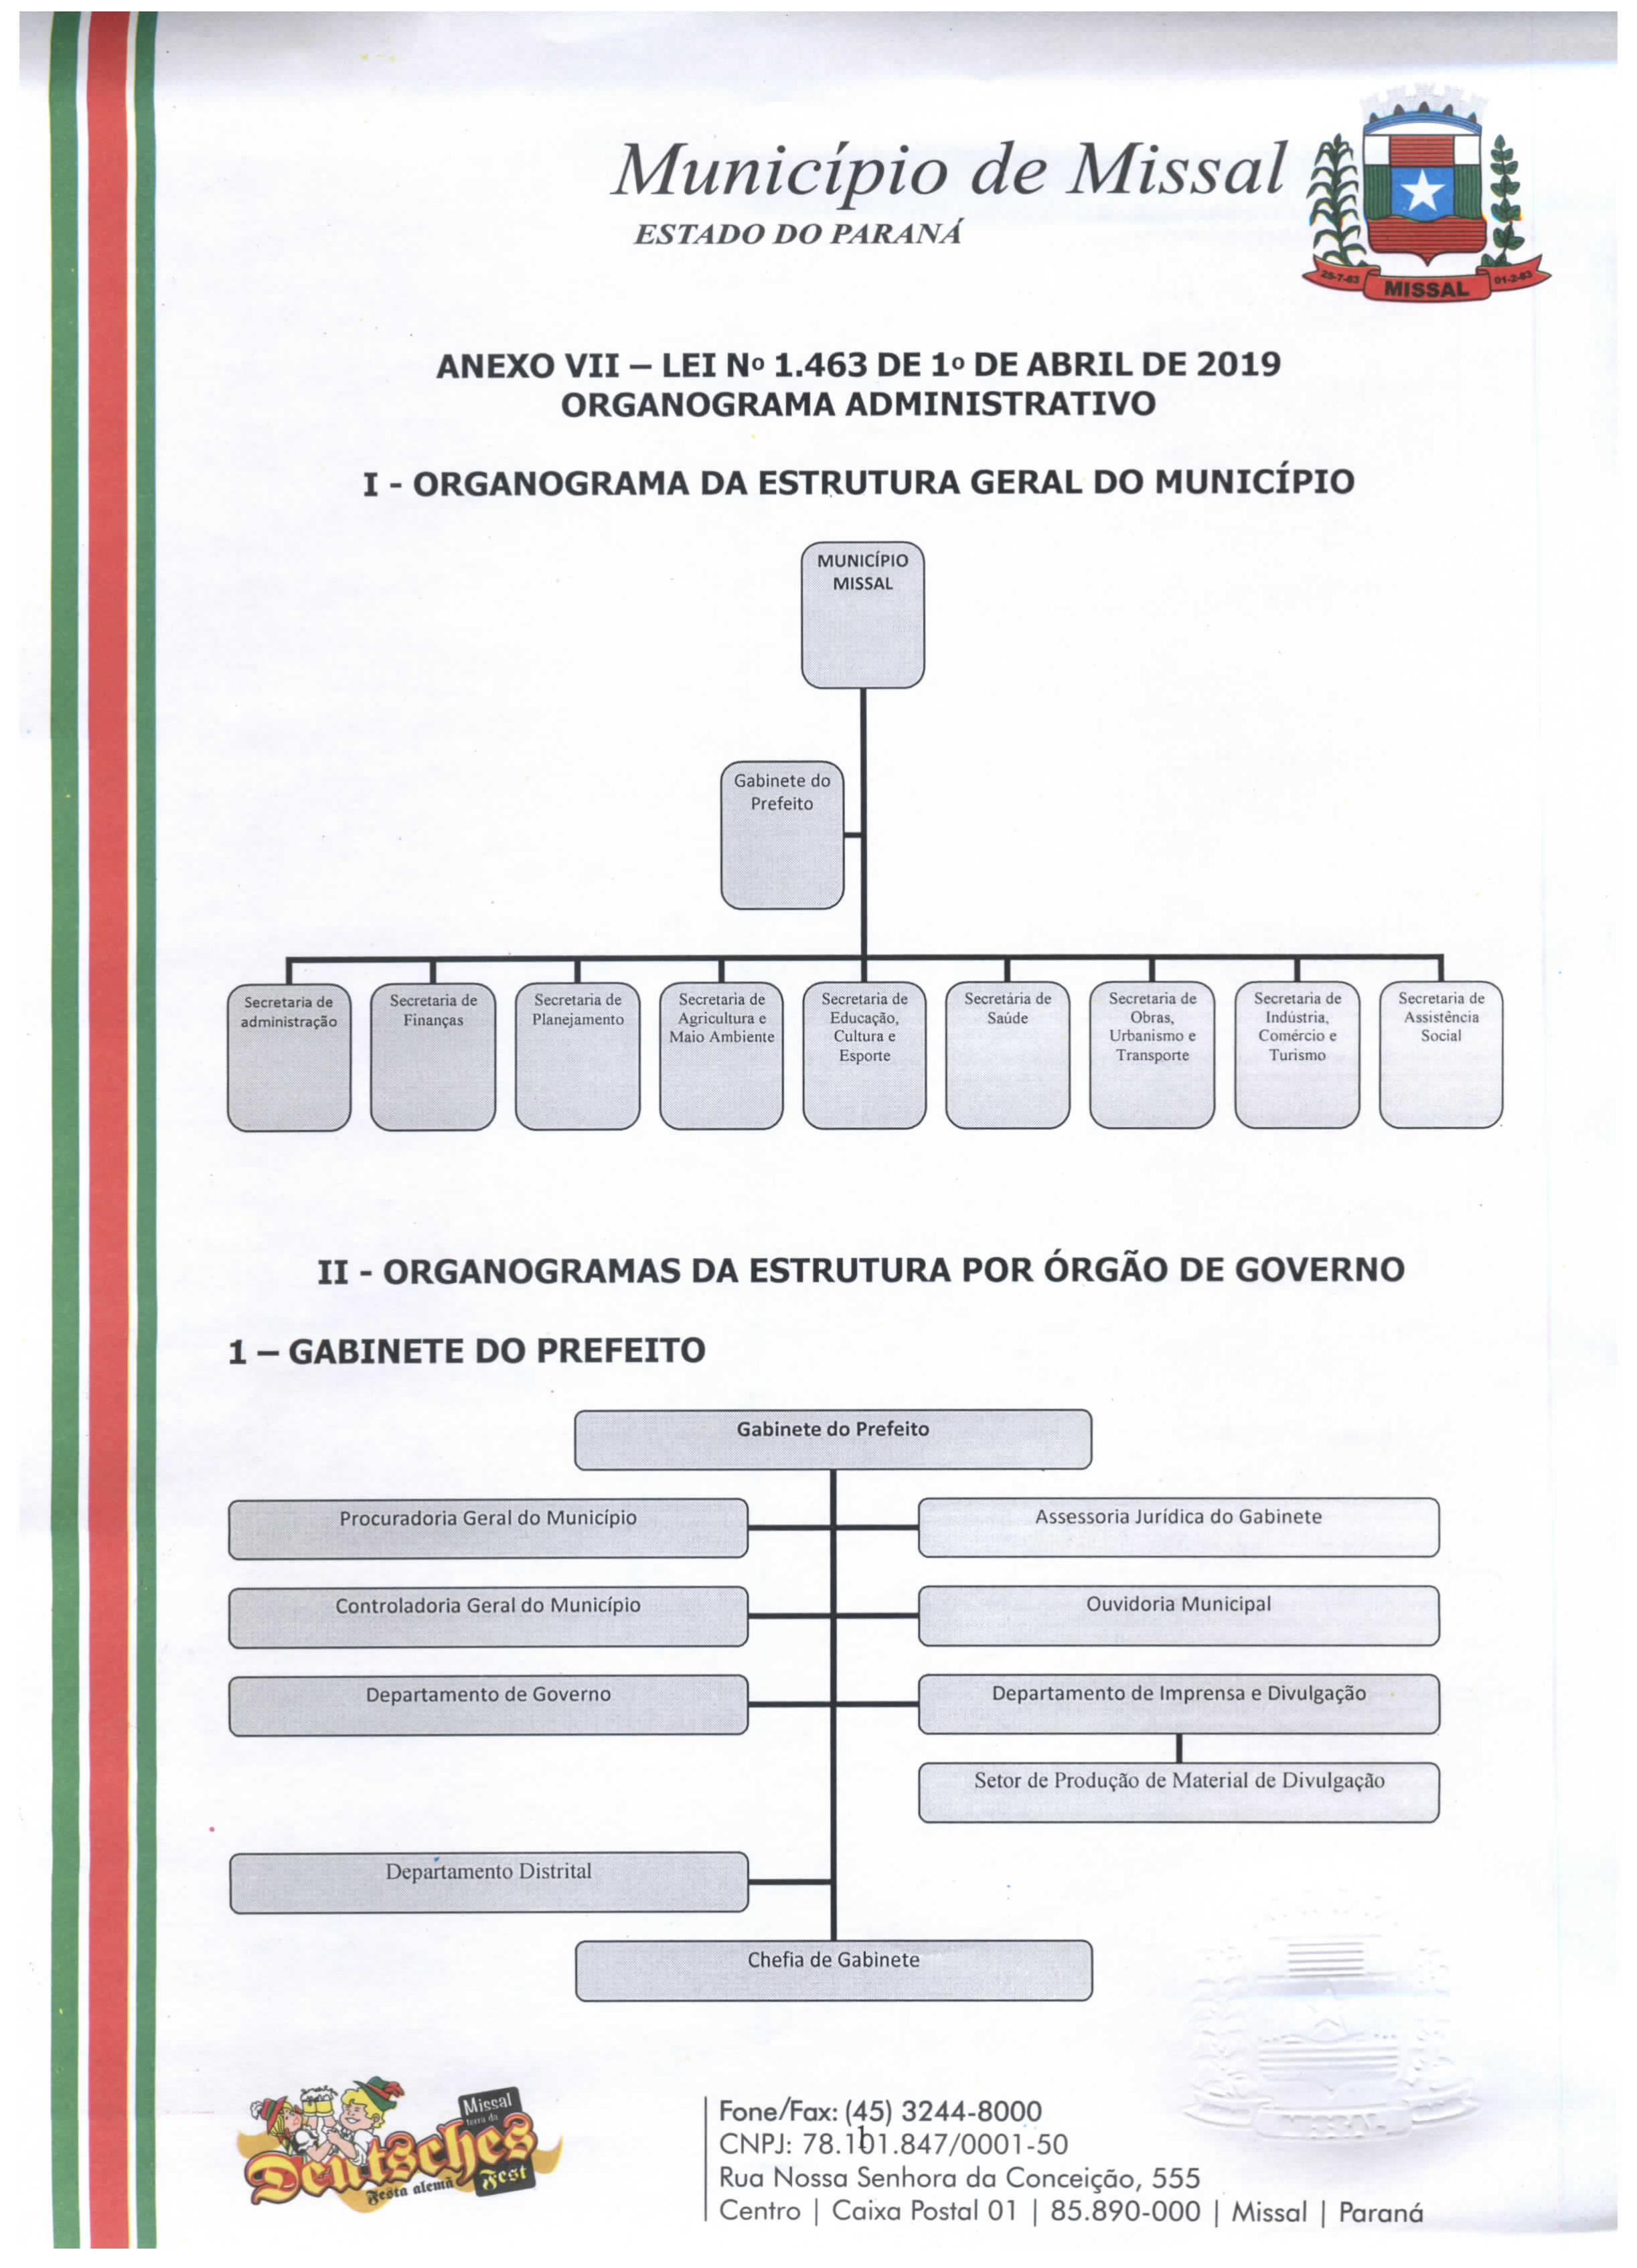 Organograma geral do municipio e organograma do gabinete do prefeito